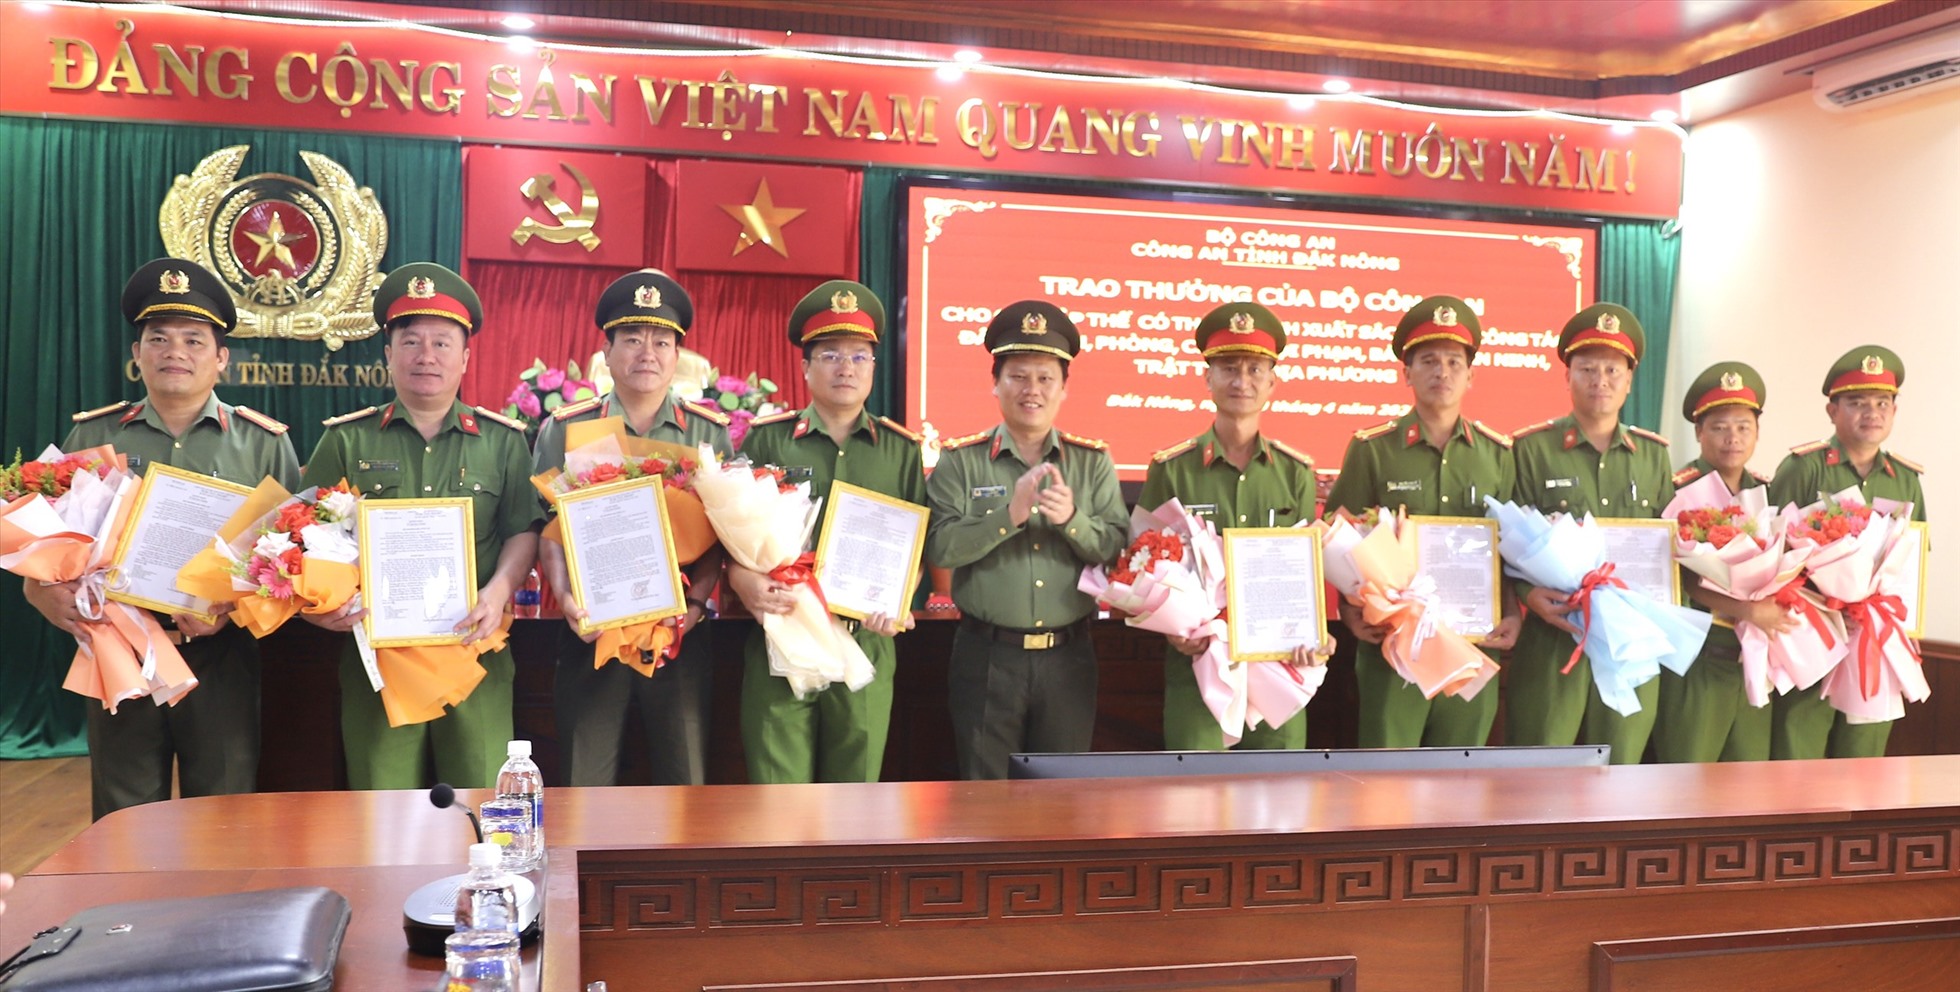 Đại tá Bùi Quang Thanh trao thưởng cho các cán bộ chiến sỹ tham gia phá án. Ảnh: Minh Quỳnh